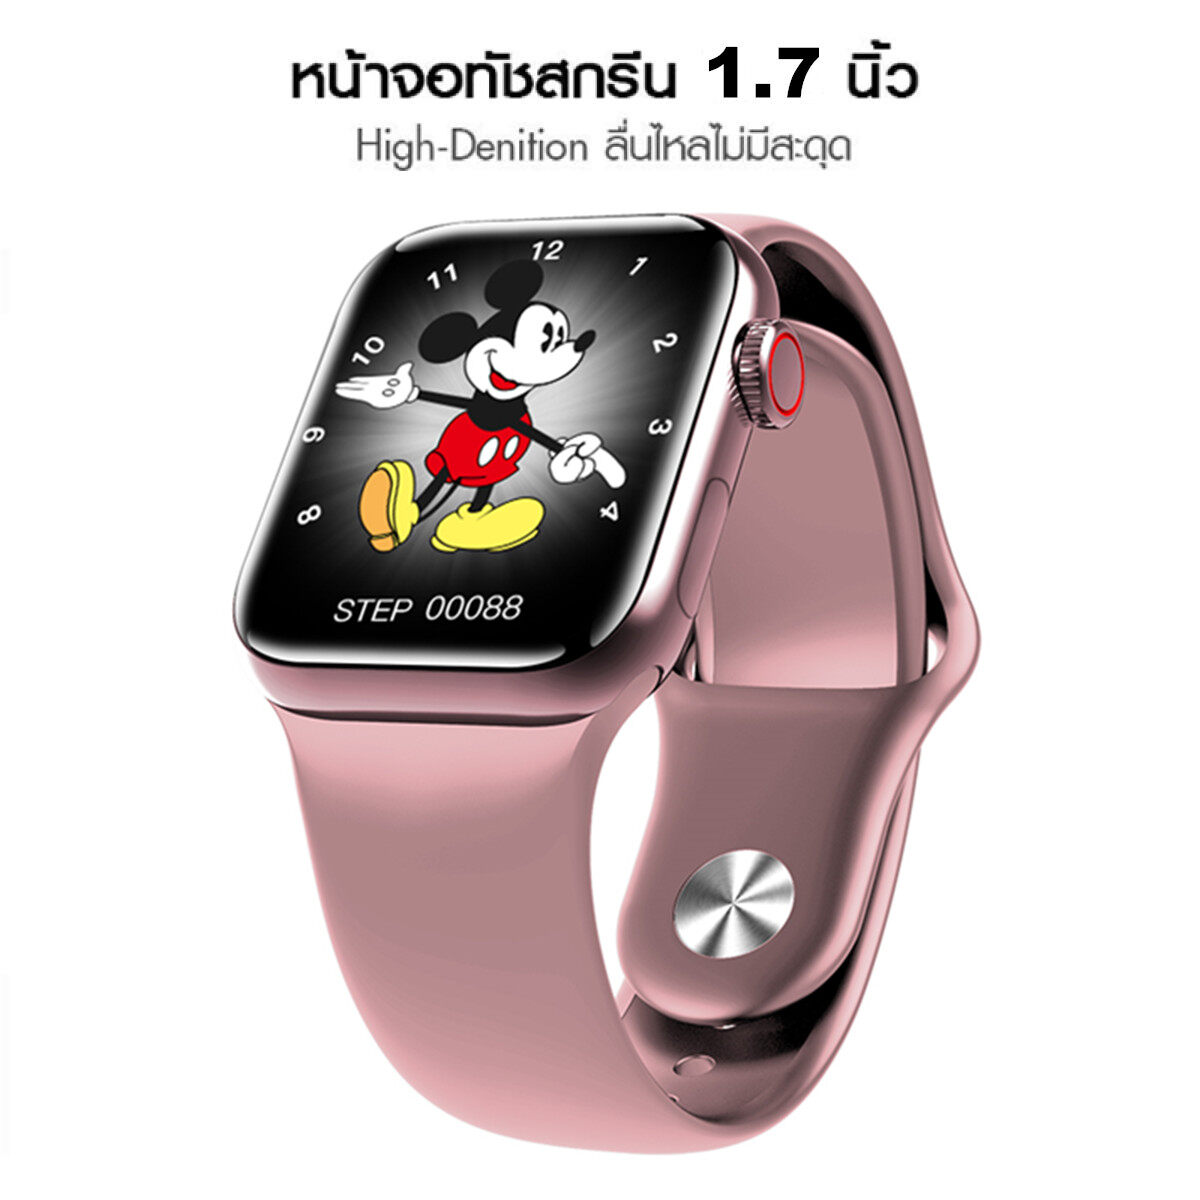 Smart Watch รุ่น Watch Series 4 เคส สายรัดข้อมือเพื่อสุขภาพ นาฬิกาดิจิตอลข้อมือ นาฬิกาจับชีพจร นาฬิกานับก้าว นาฬิกาวัดแคลอรี่ รองรับภาษาไทย